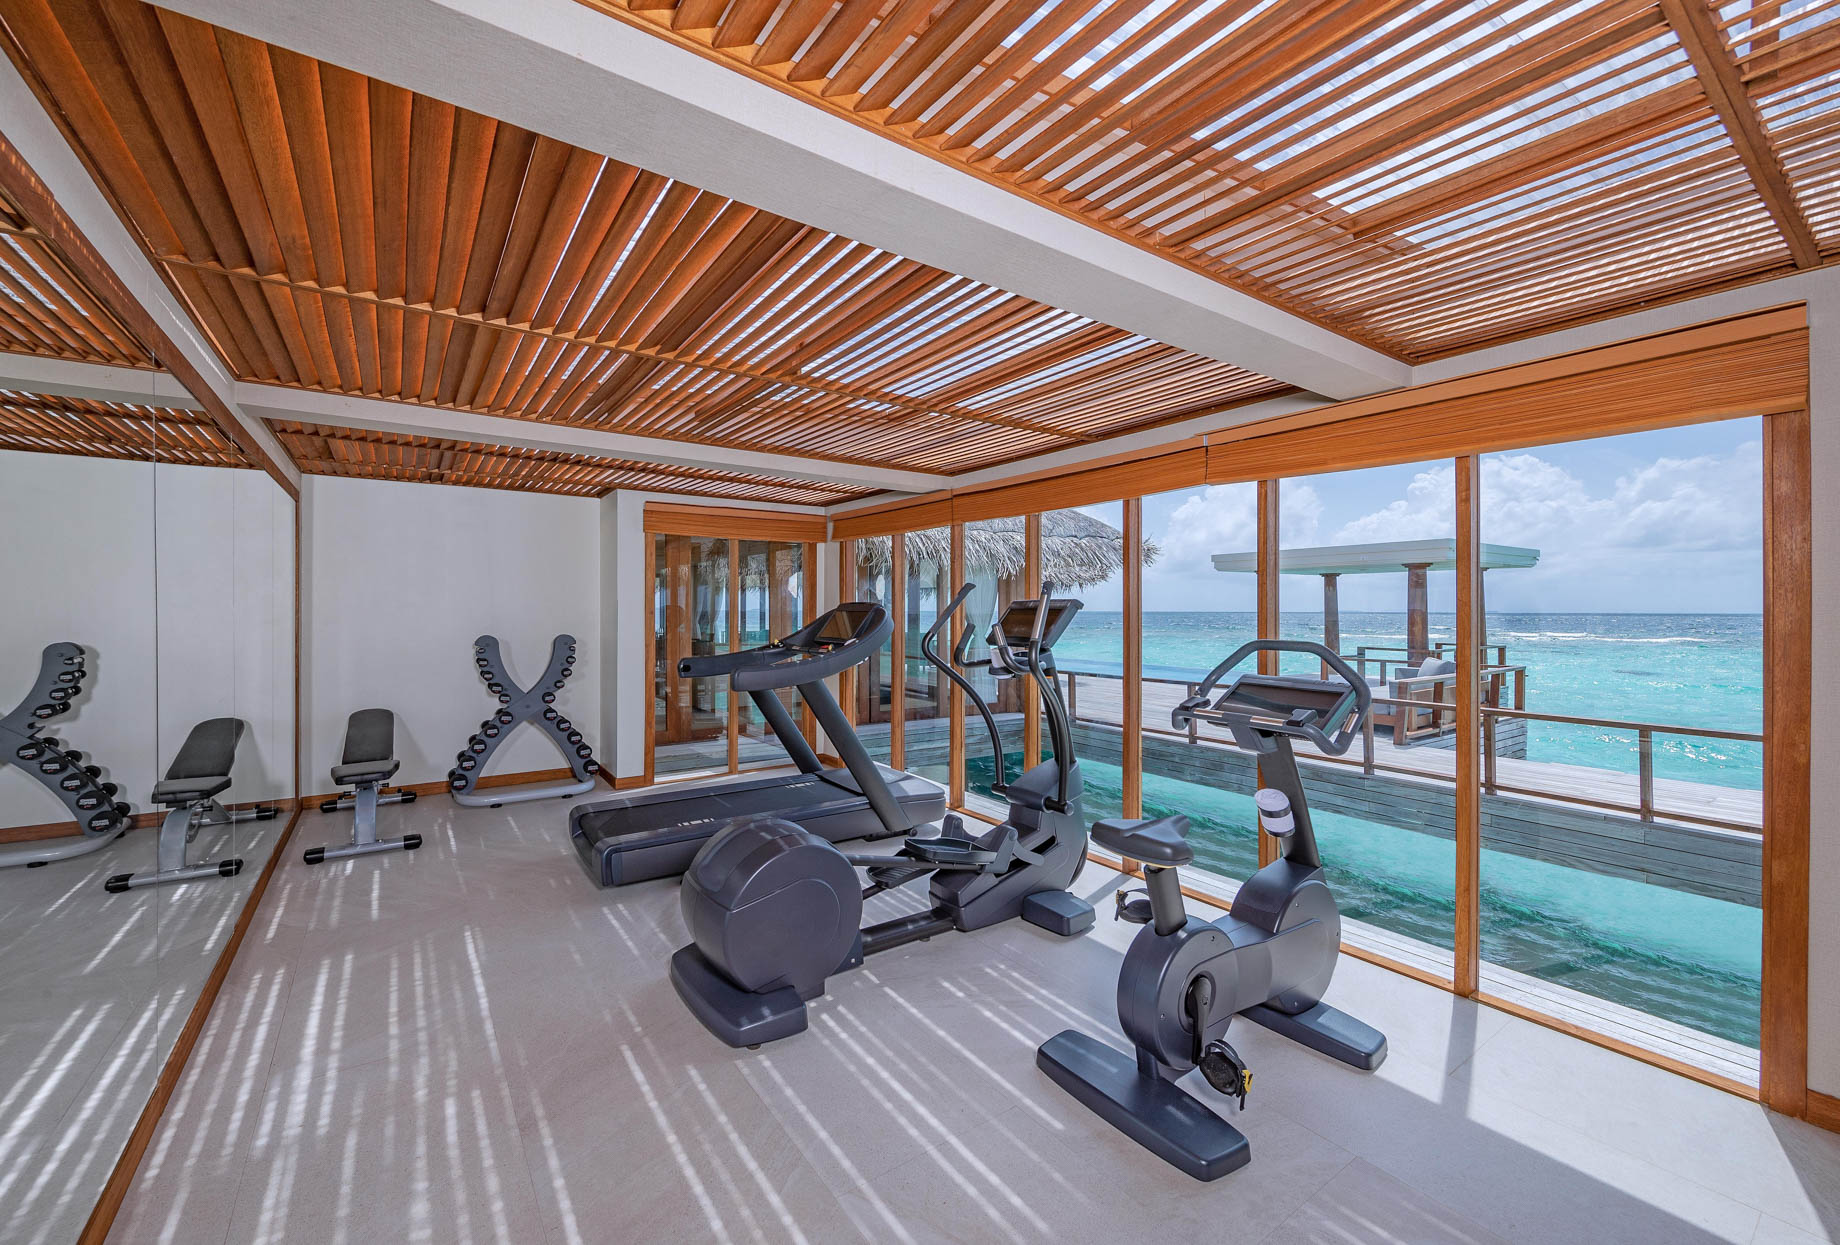 Anantara Kihavah Maldives Villas Resort – Baa Atoll, Maldives – Two Bedroom Sunset Over Water Pool Residence Gym